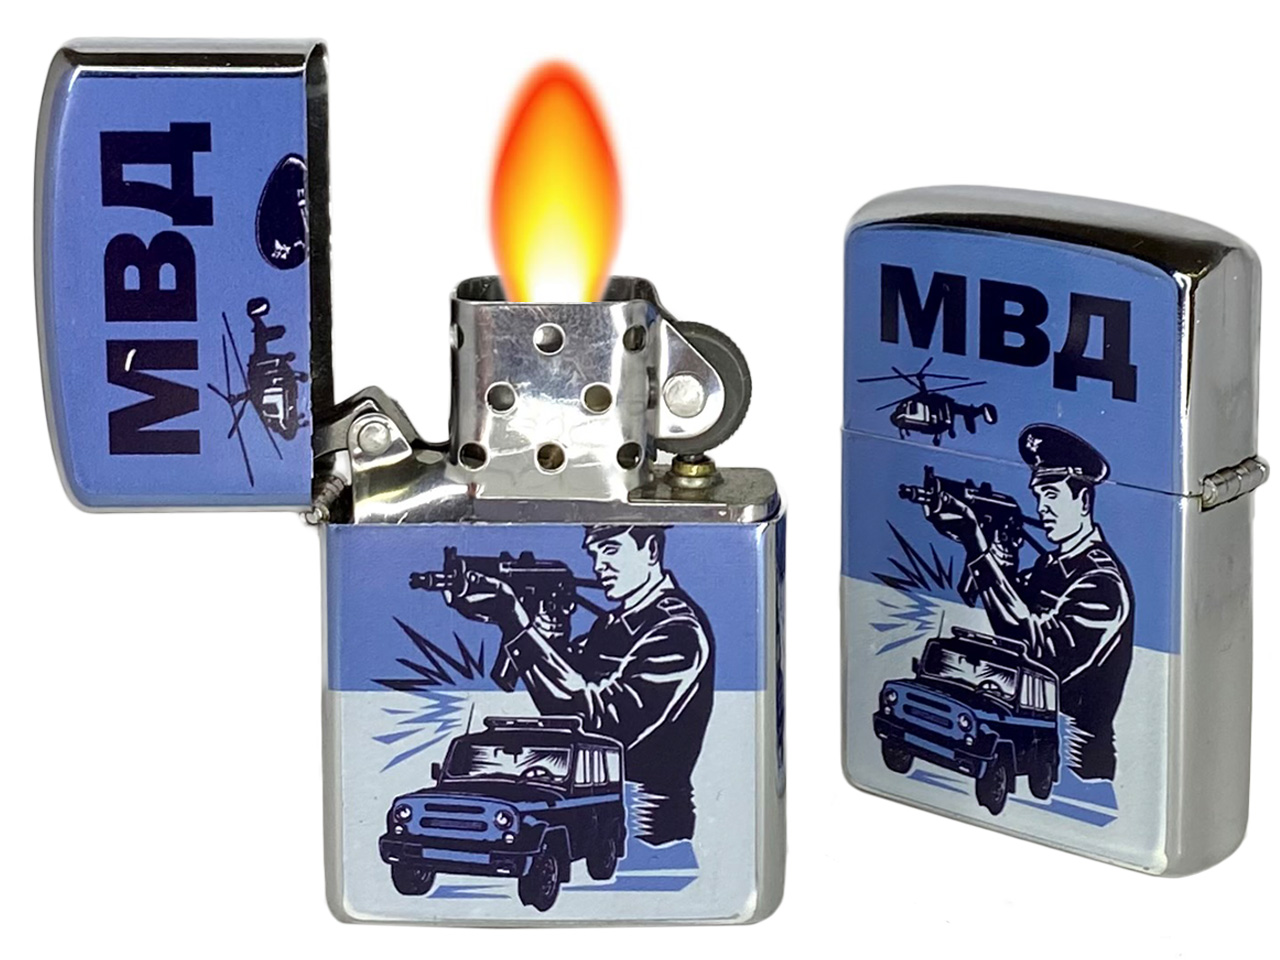 Купить оригинальную бензиновую зажигалку "МВД" онлайн с доставкой